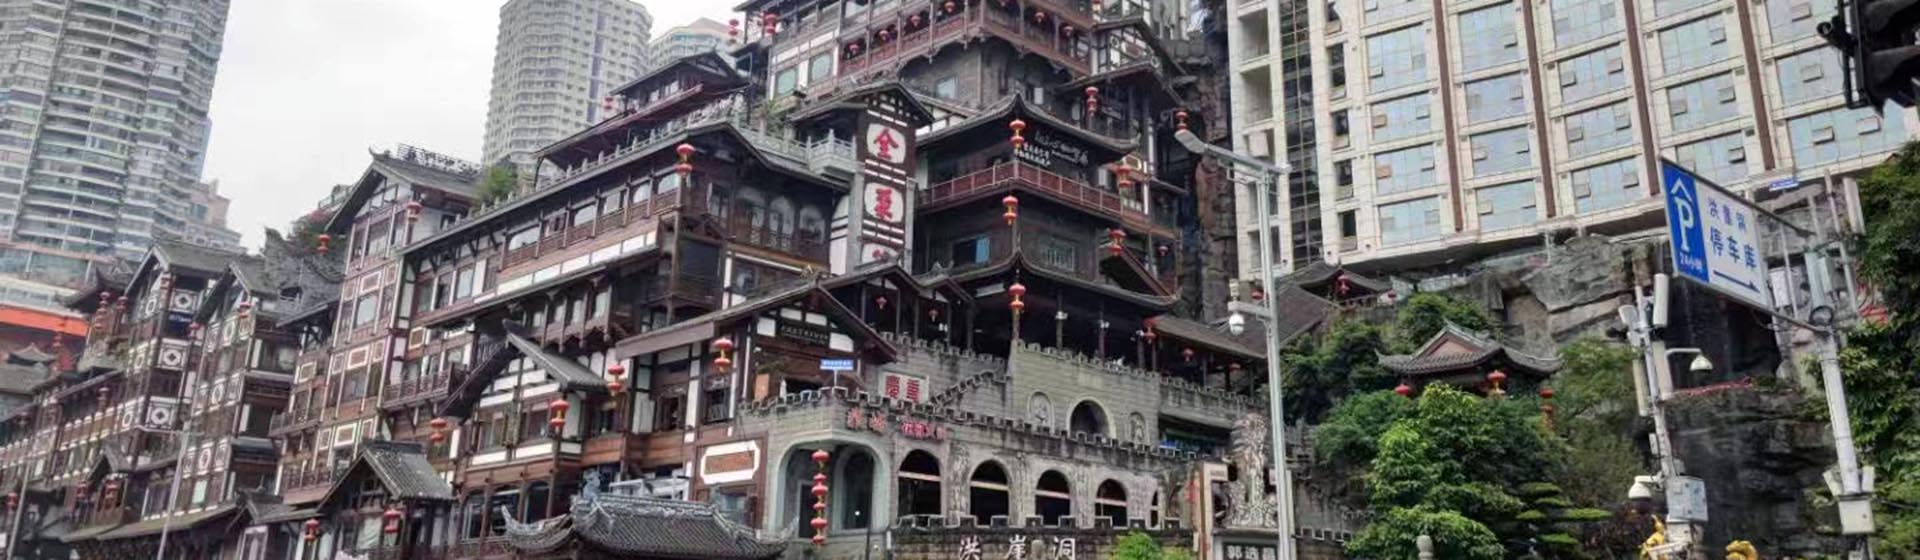 Chongqing City Tours